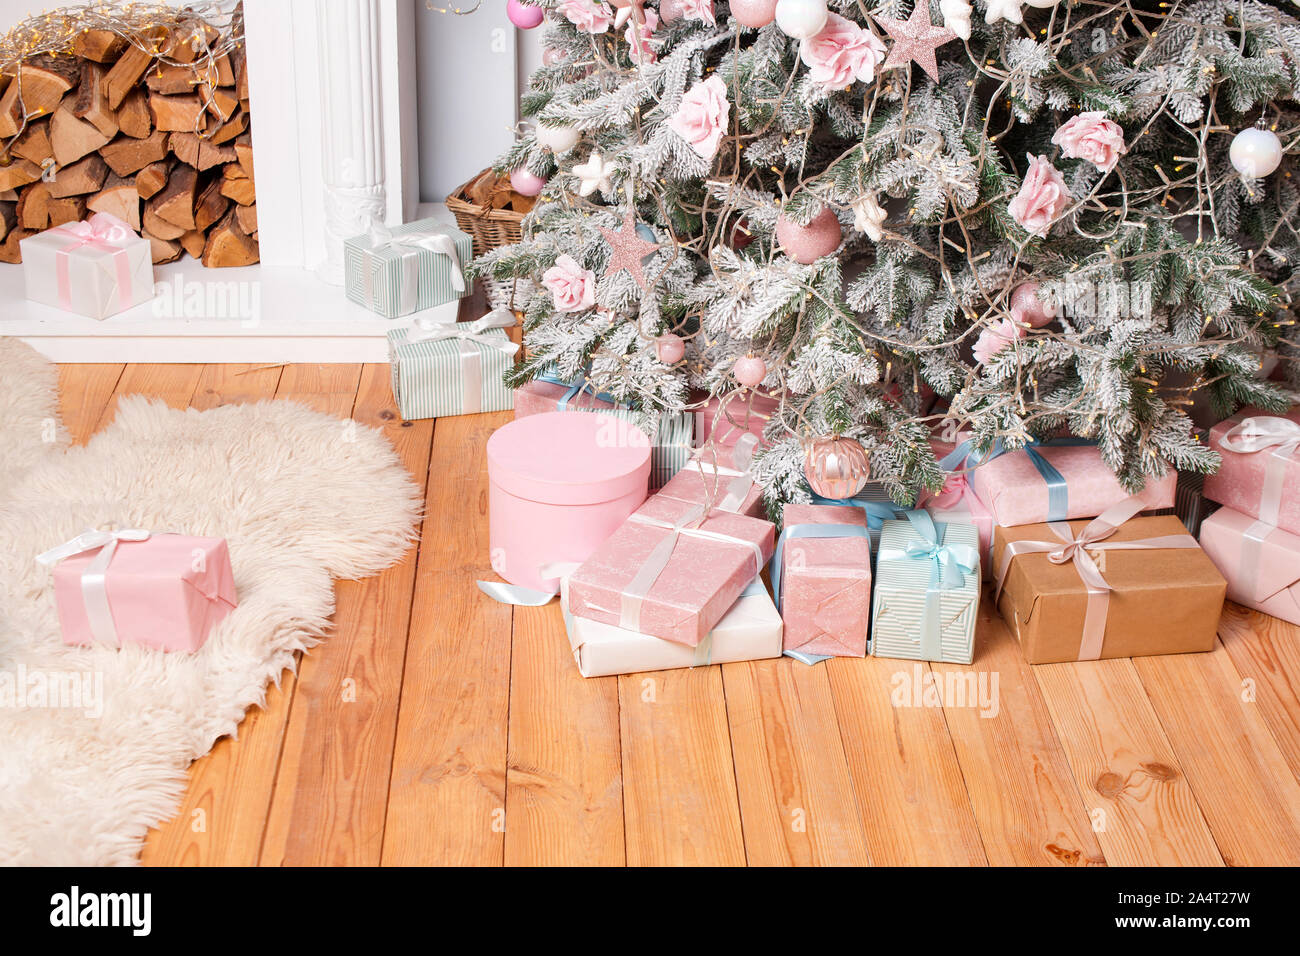 De beaux cadeaux de Noël sur le plancher près de sapin dans la salle avec cheminée. Des cadeaux de Noël et de décoration. Heureux Vacances d'hiver Banque D'Images